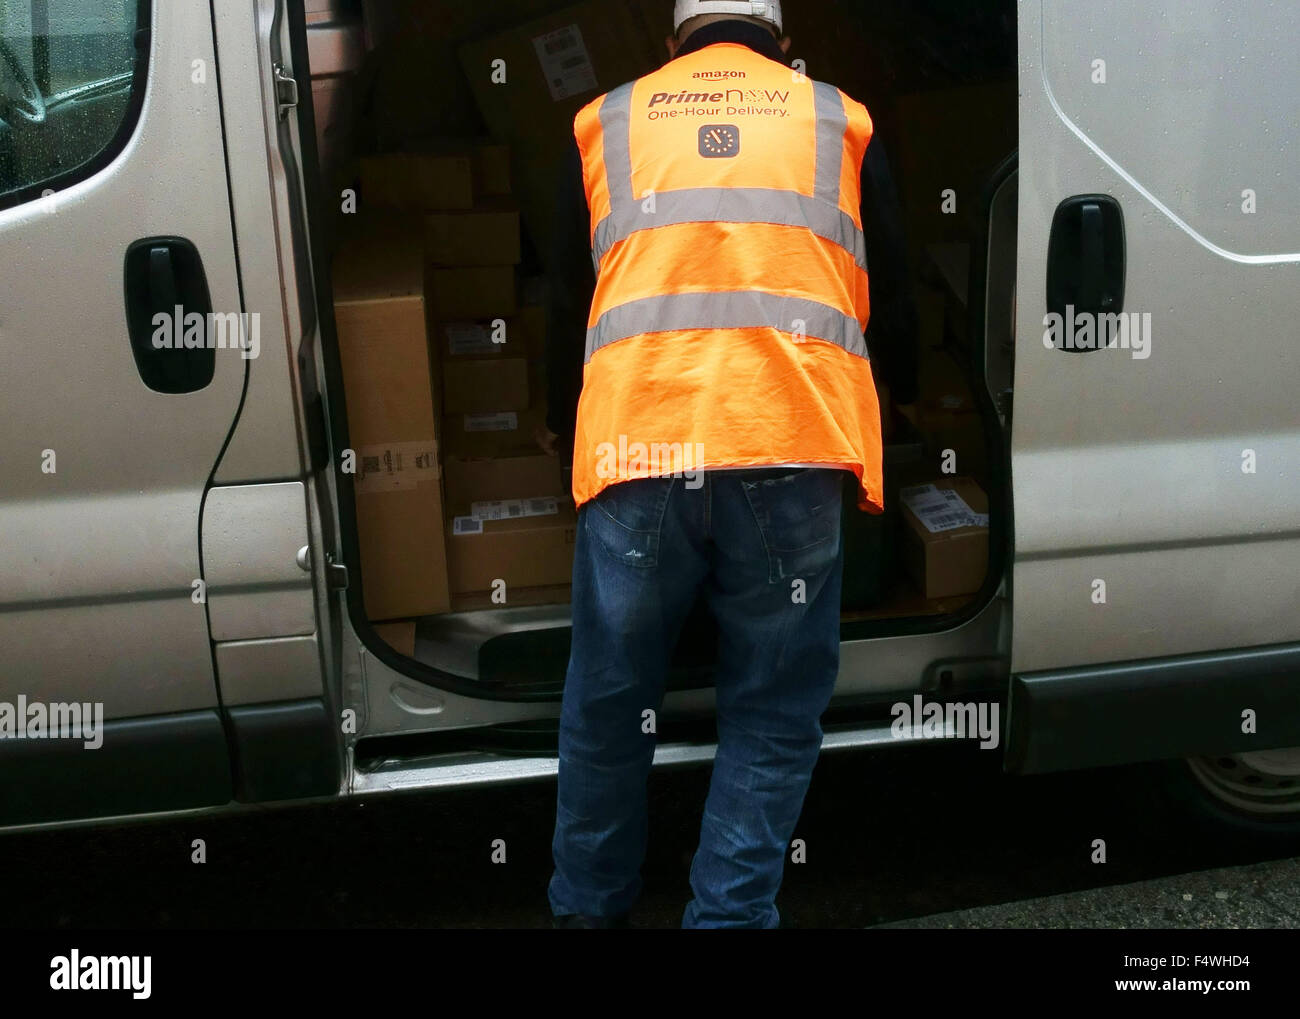 La perfezione del Amazon ora 1 ora la consegna del veicolo e del guidatore, Londra Foto Stock